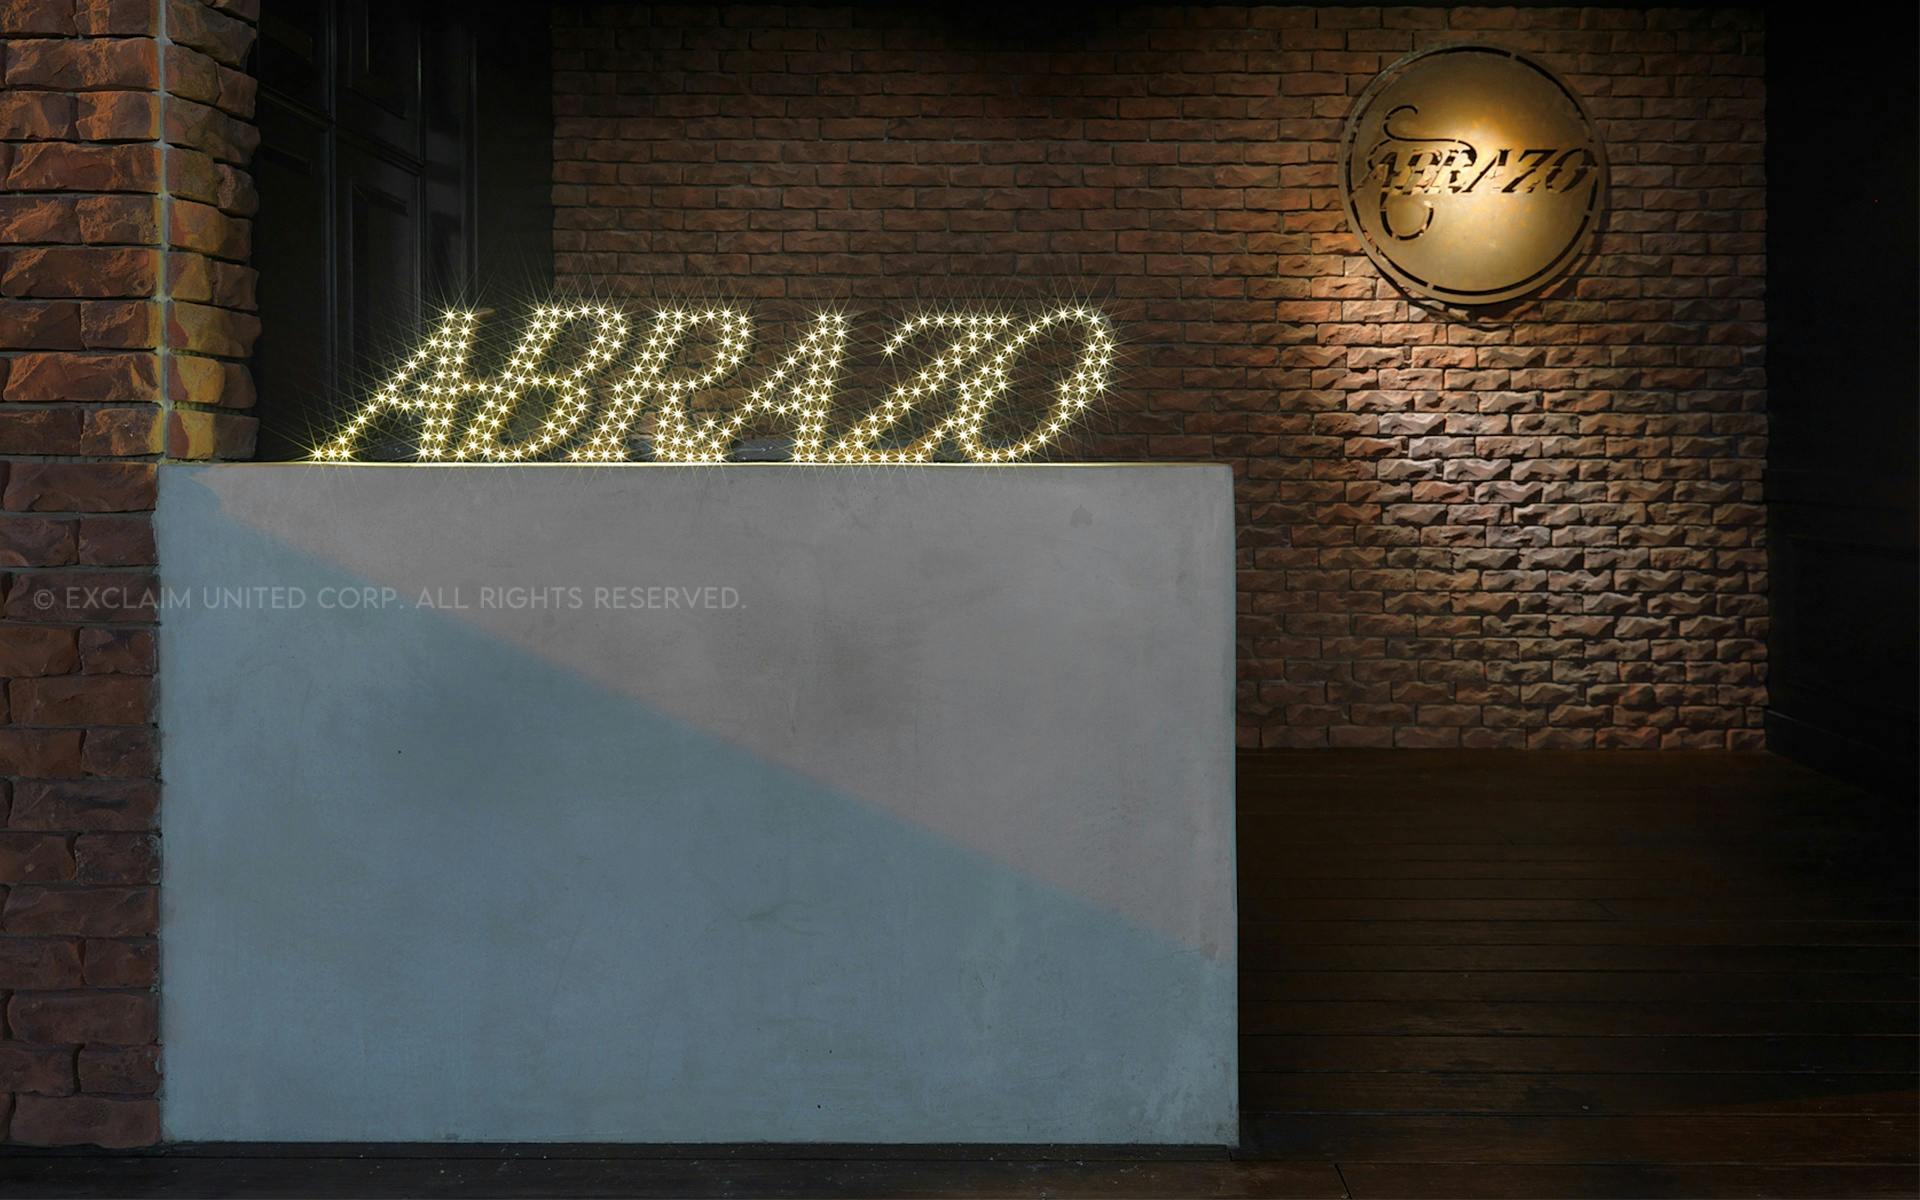 ABRAZO Bar